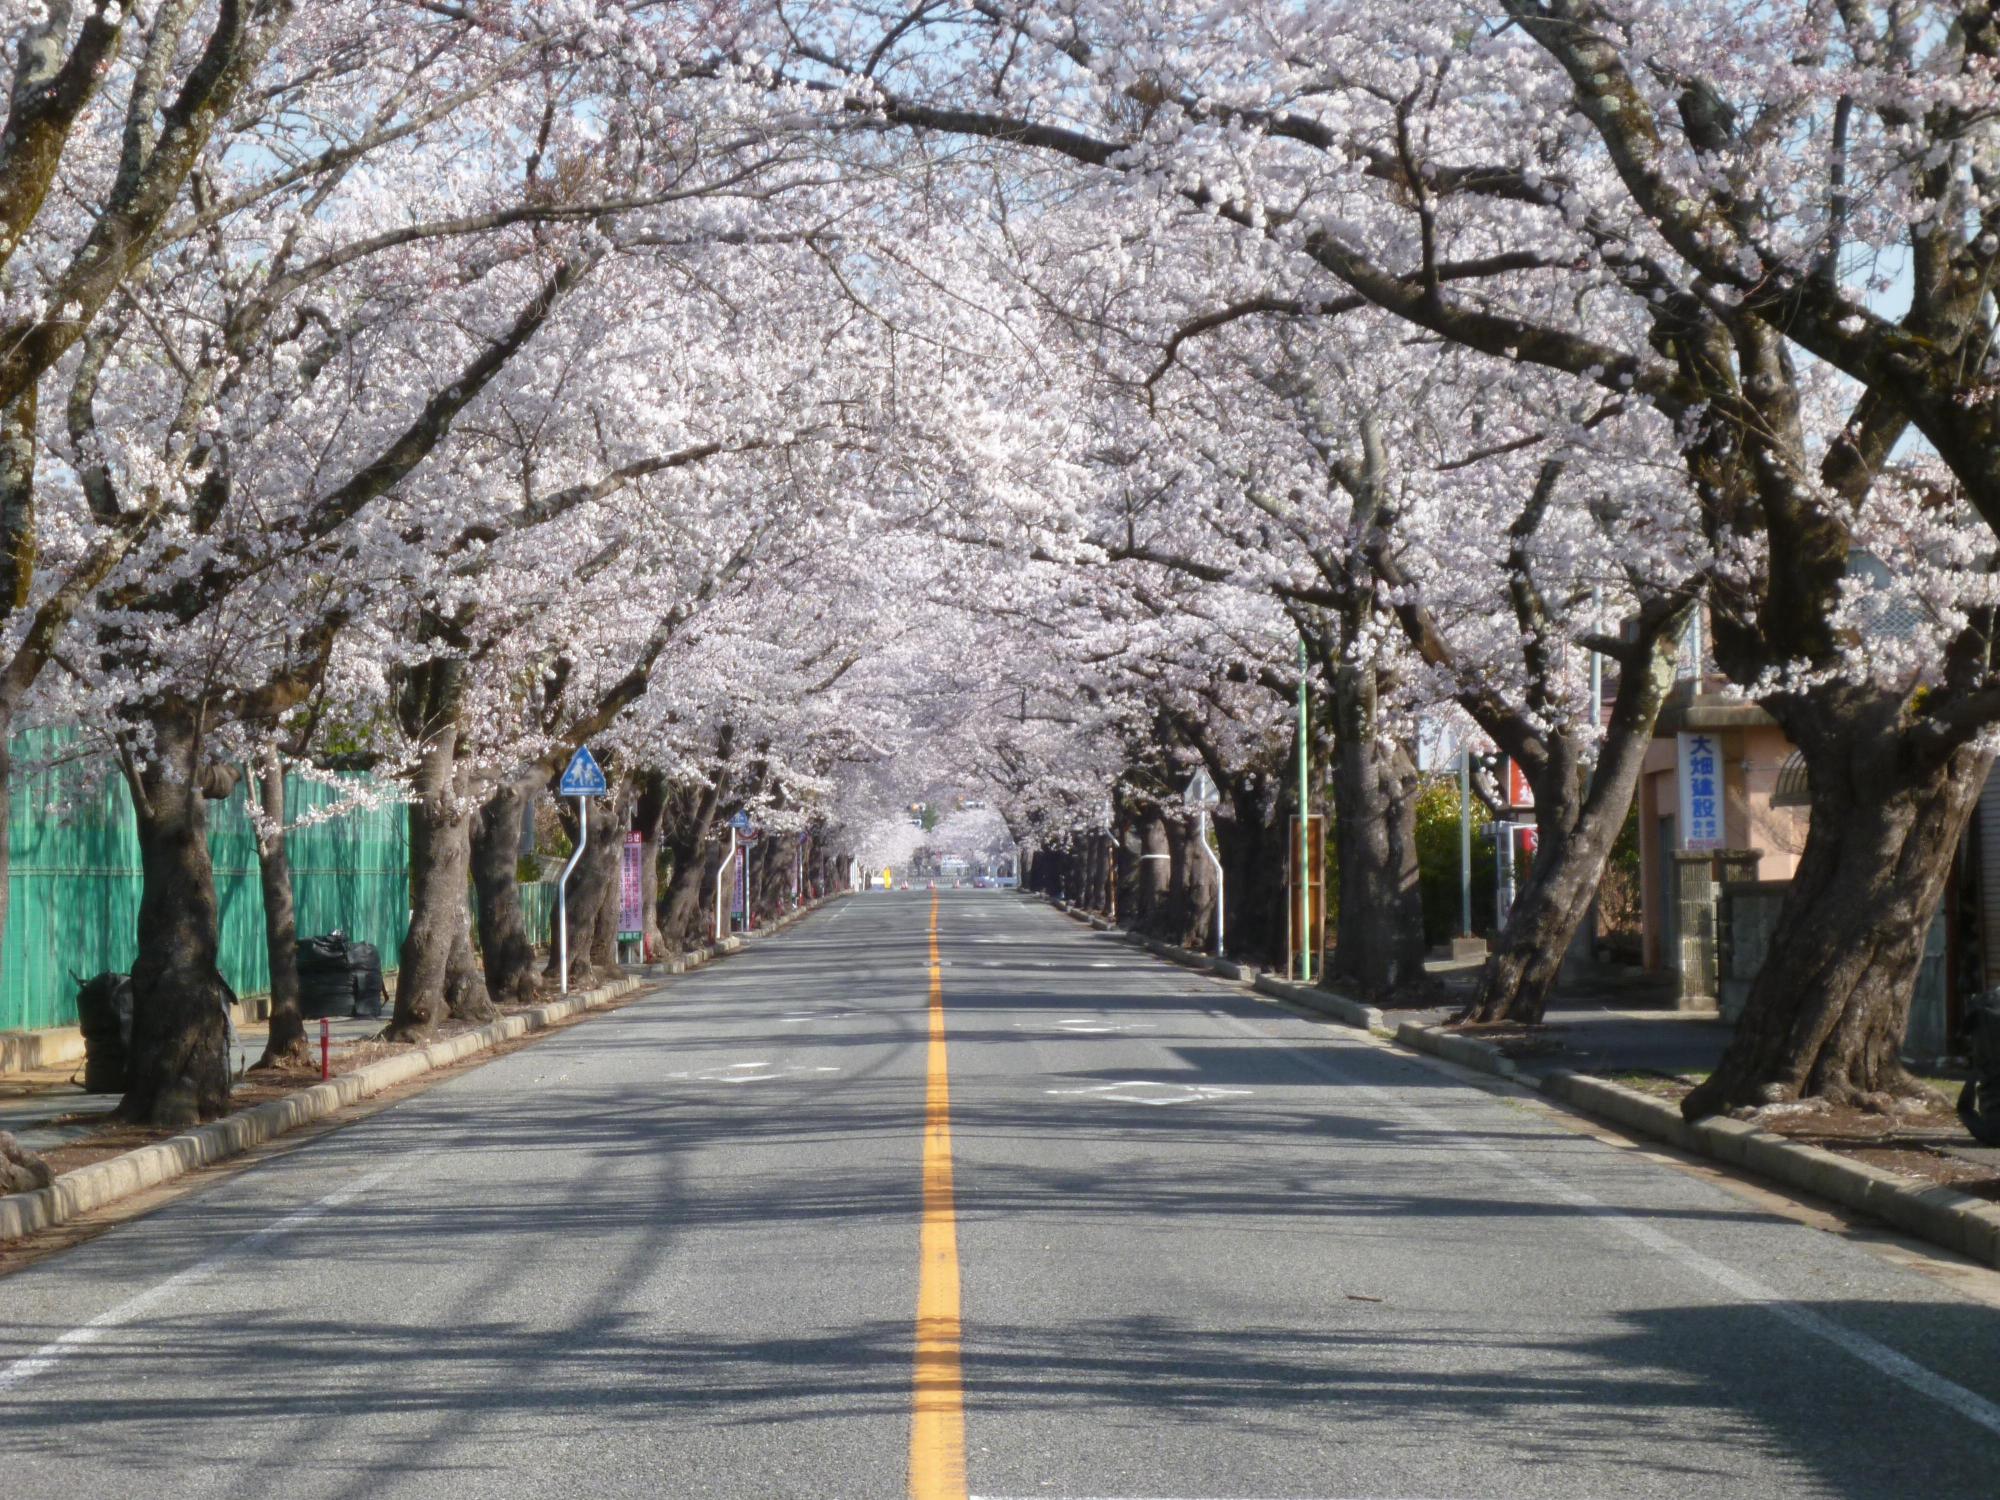 富岡第二中学校東側の道路の両脇に咲く桜並木の写真